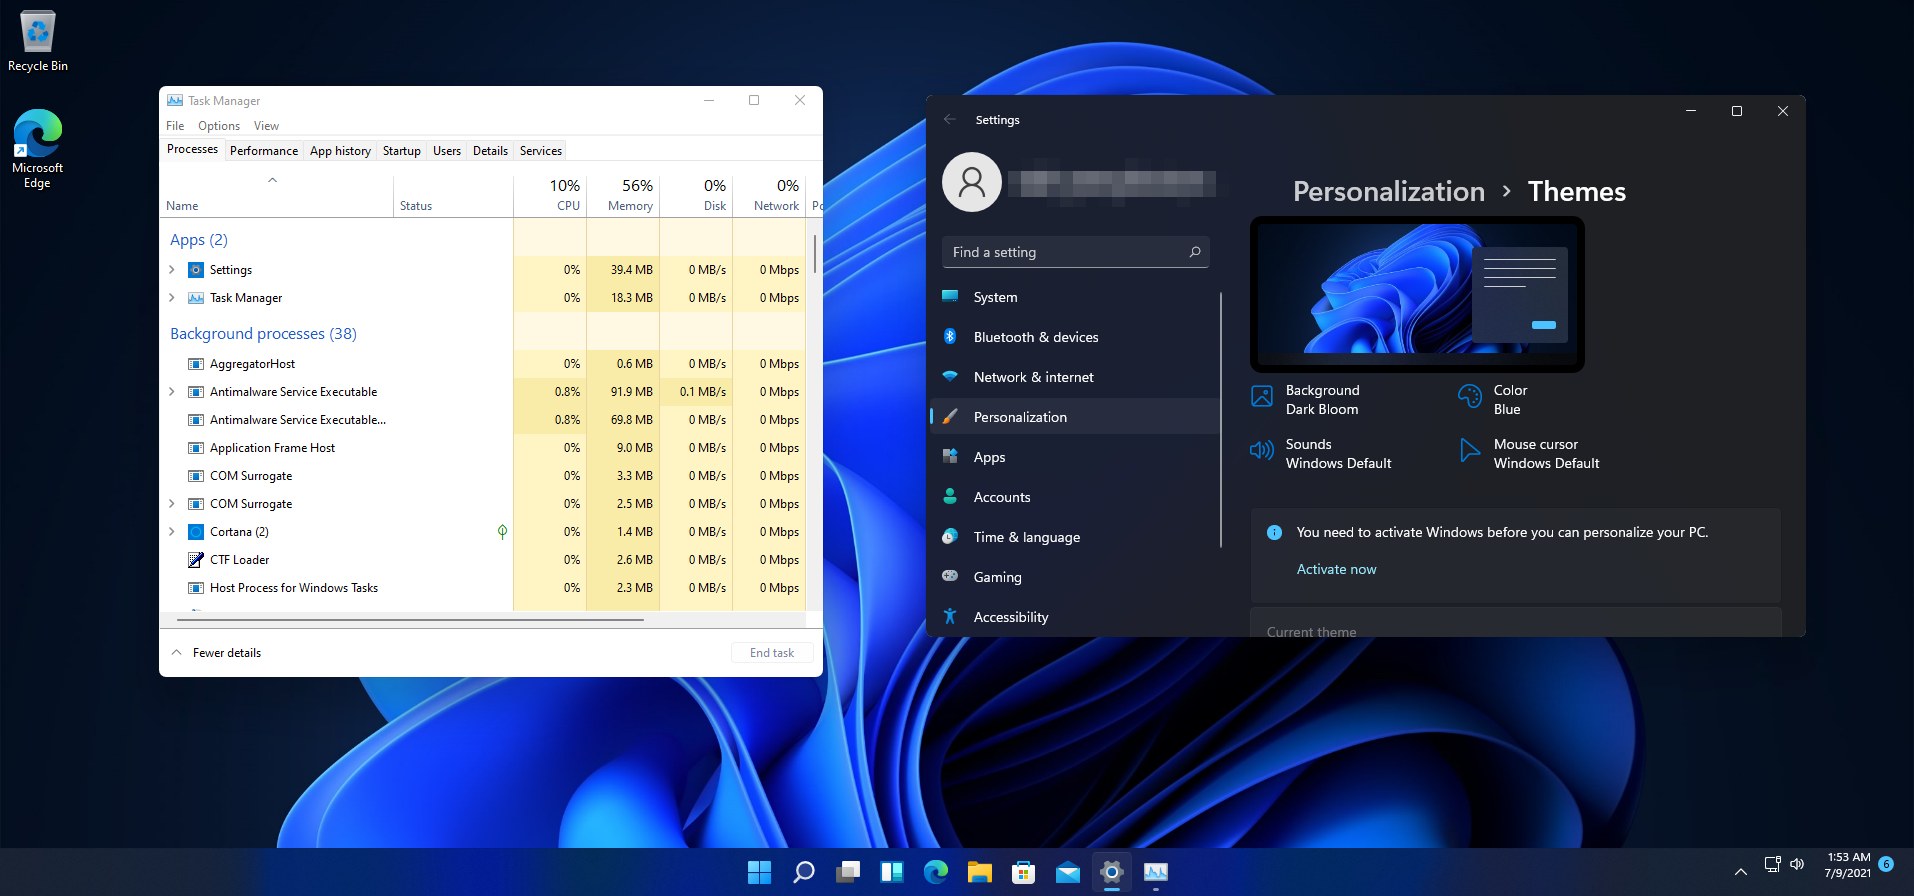 Windows 11 compilación 22000.65: mejores características nuevas y cambios notables